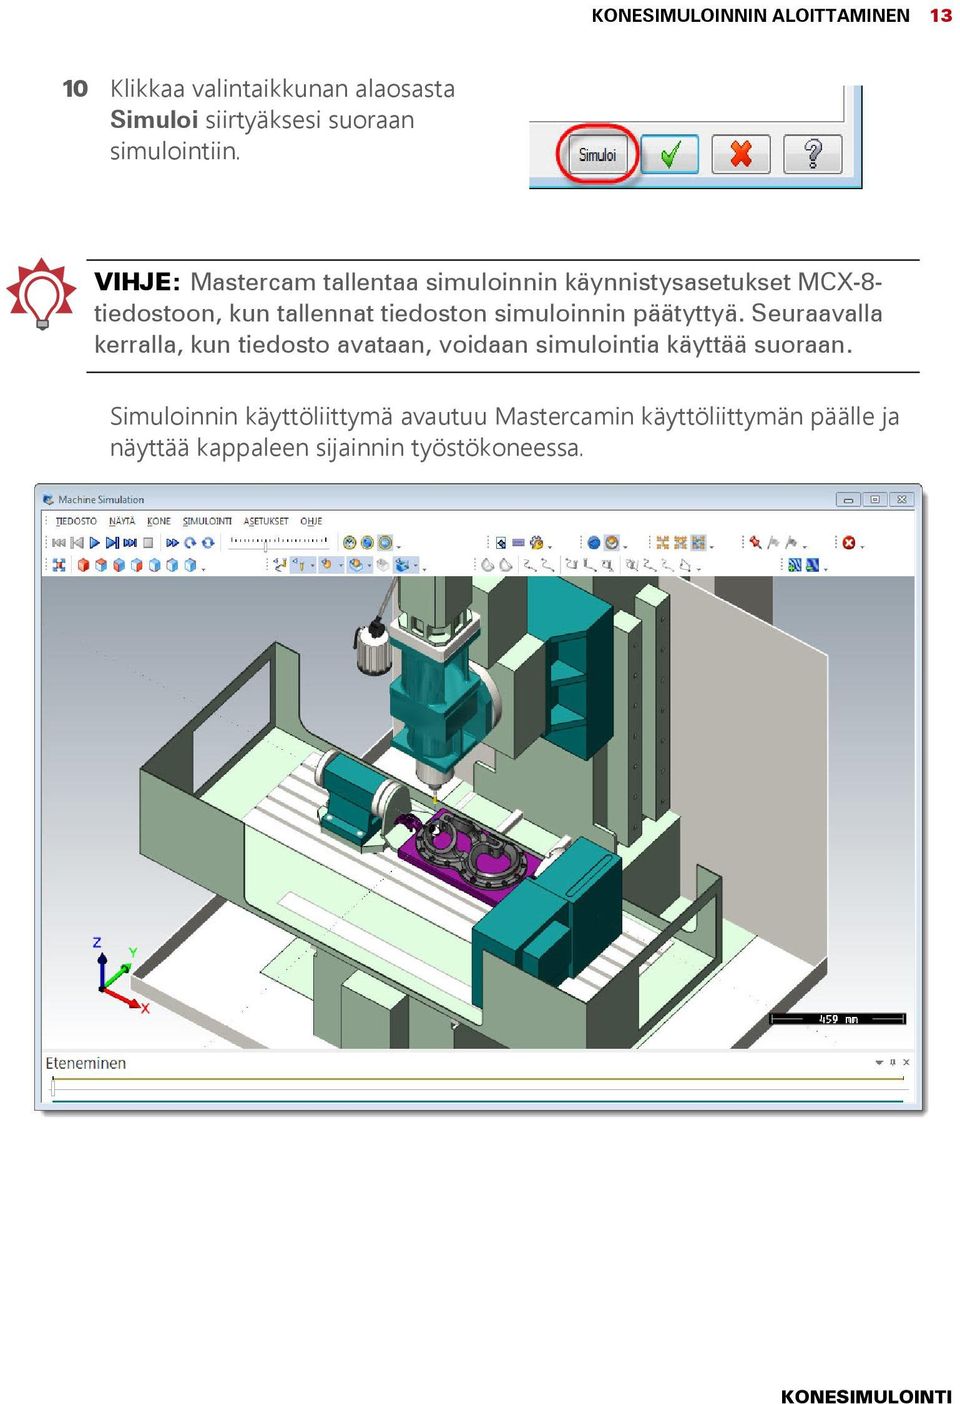 VIHJE: Mastercam tallentaa simuloinnin käynnistysasetukset MCX-8- tiedostoon, kun tallennat tiedoston